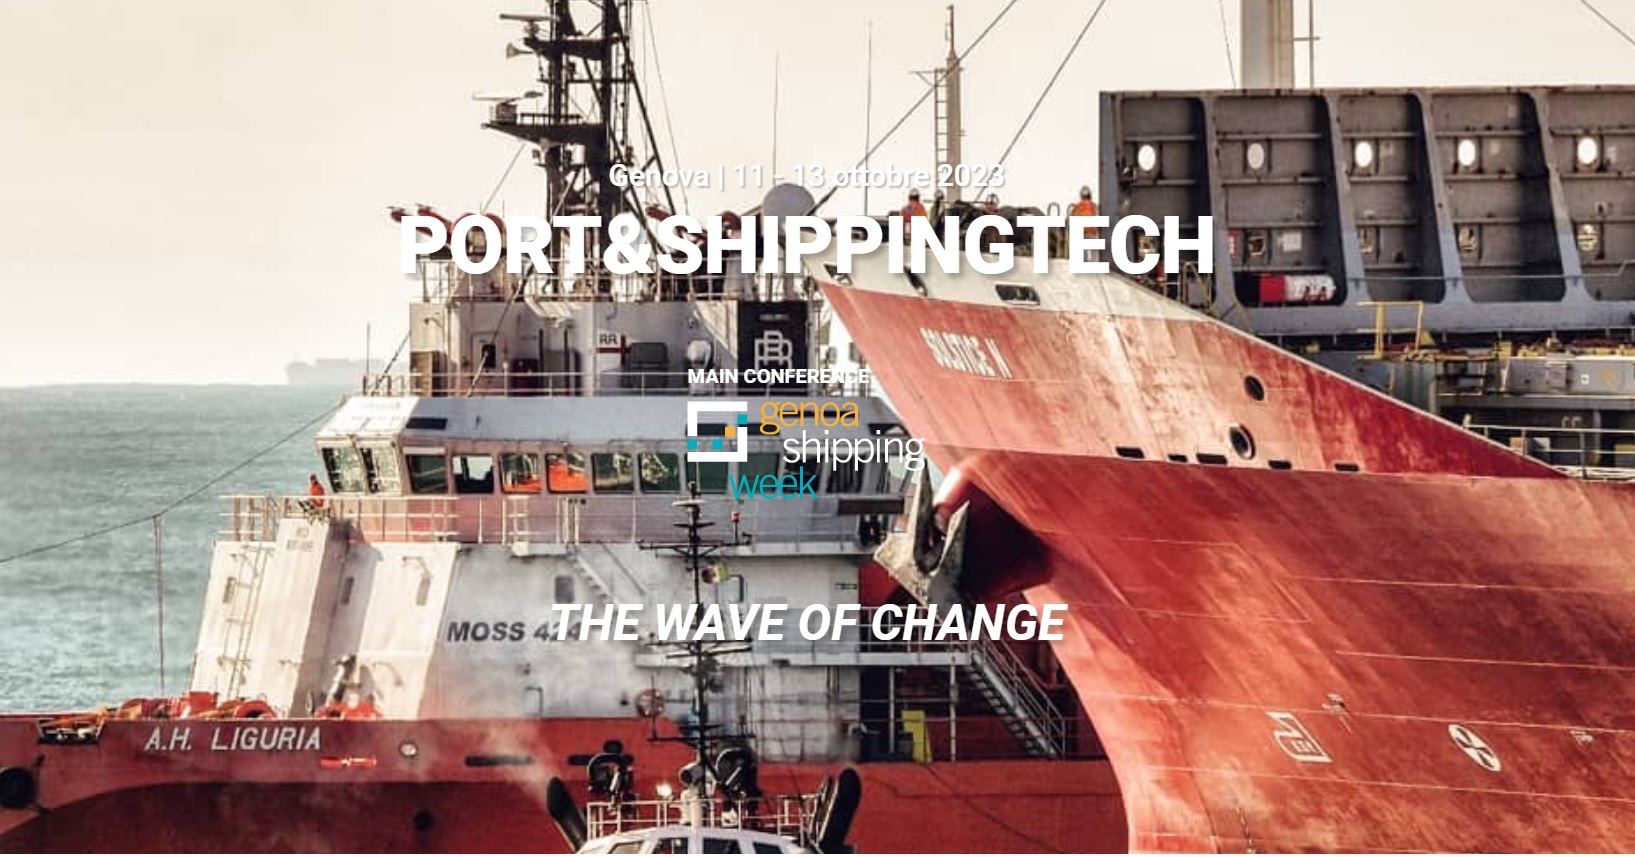 port&shippingtech wave